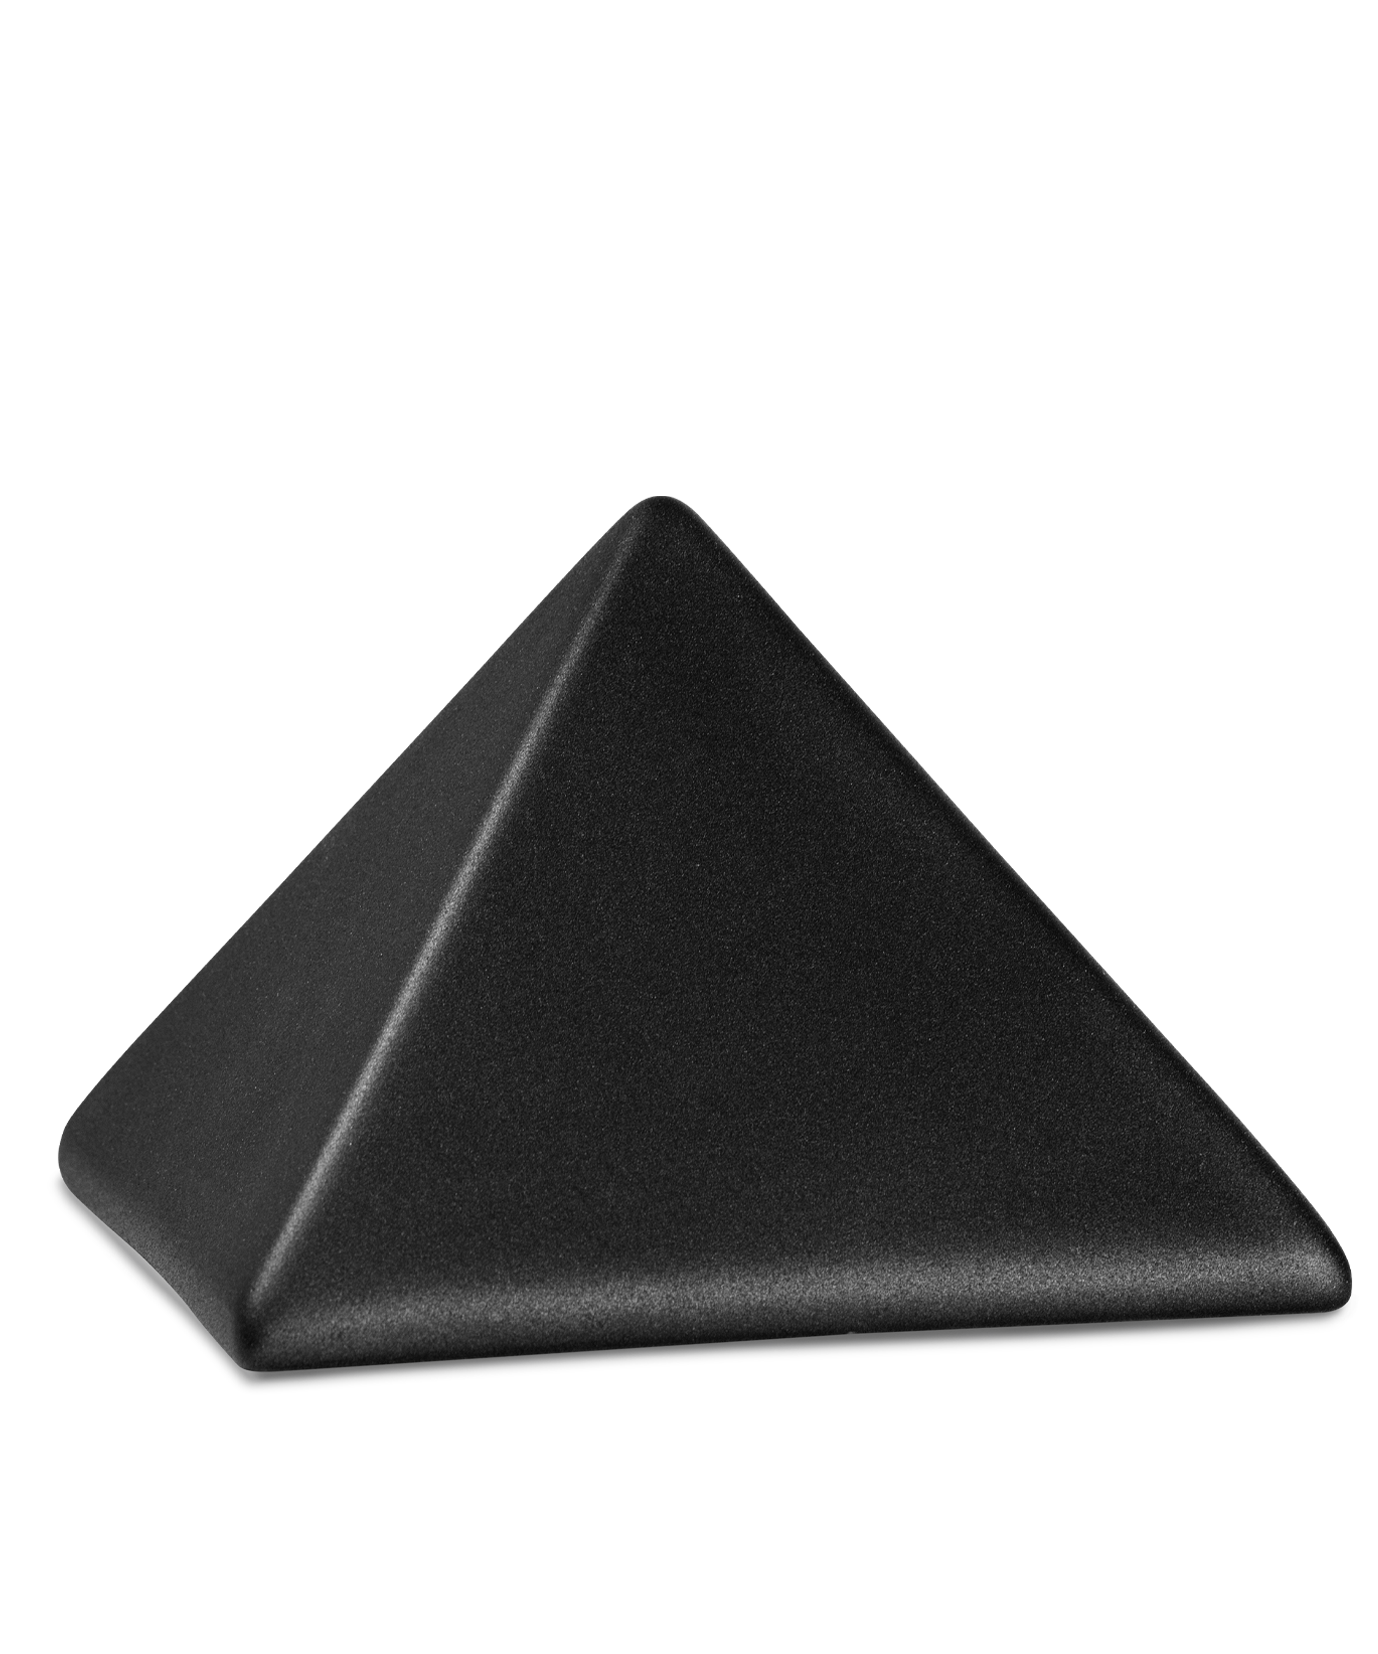 Urne Edition Pyramide 0,5 oder 1,5 Liter